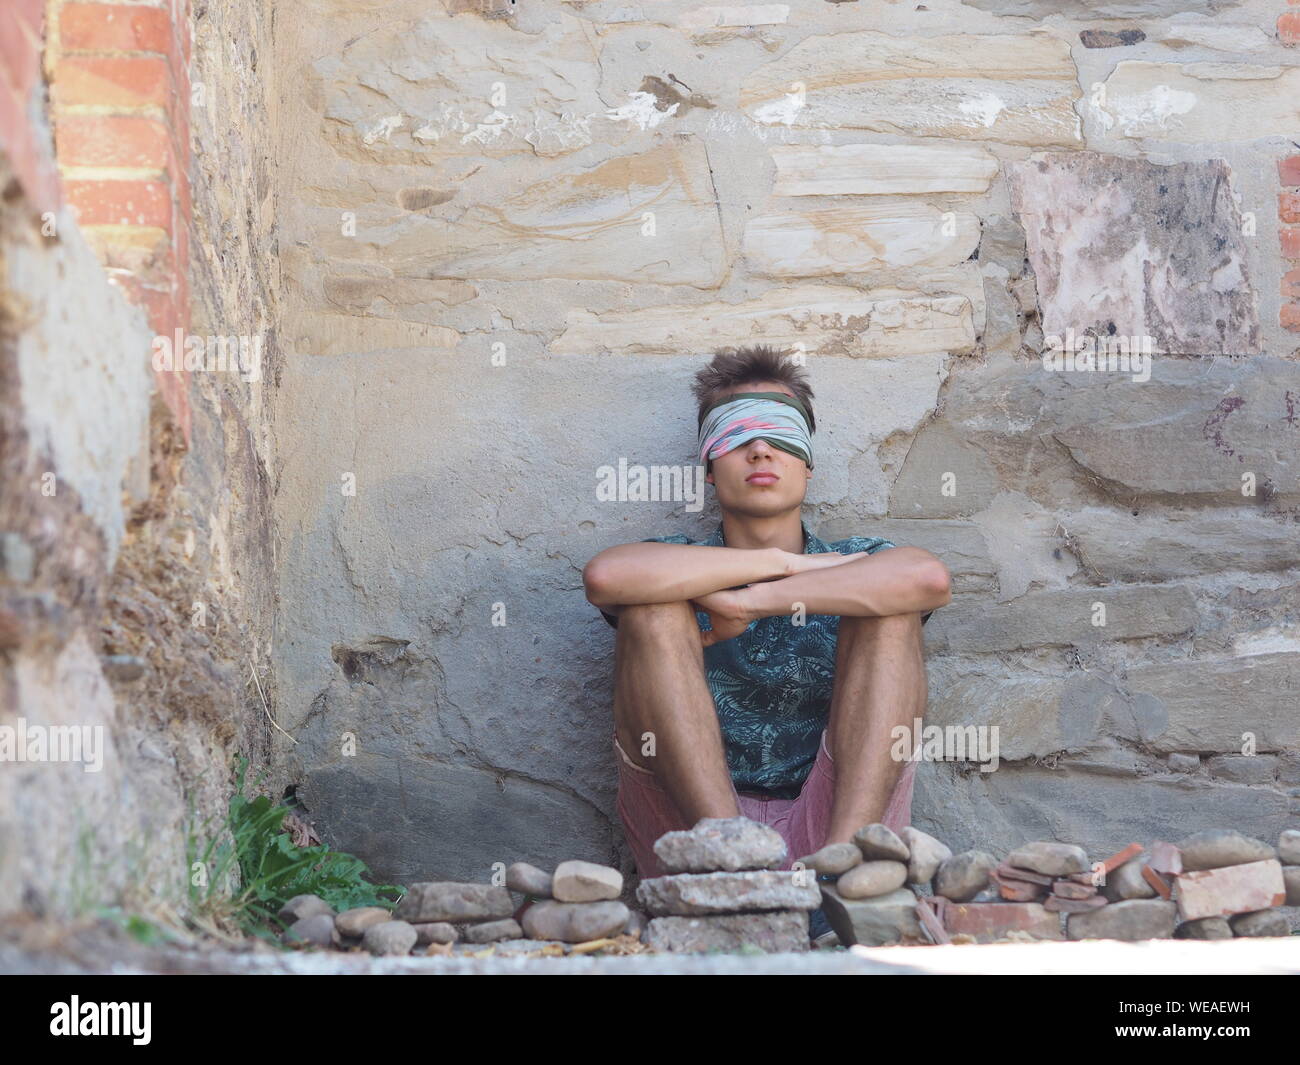 Hombre con los ojos cubiertos sentado contra la vieja pared desgastada Foto de stock